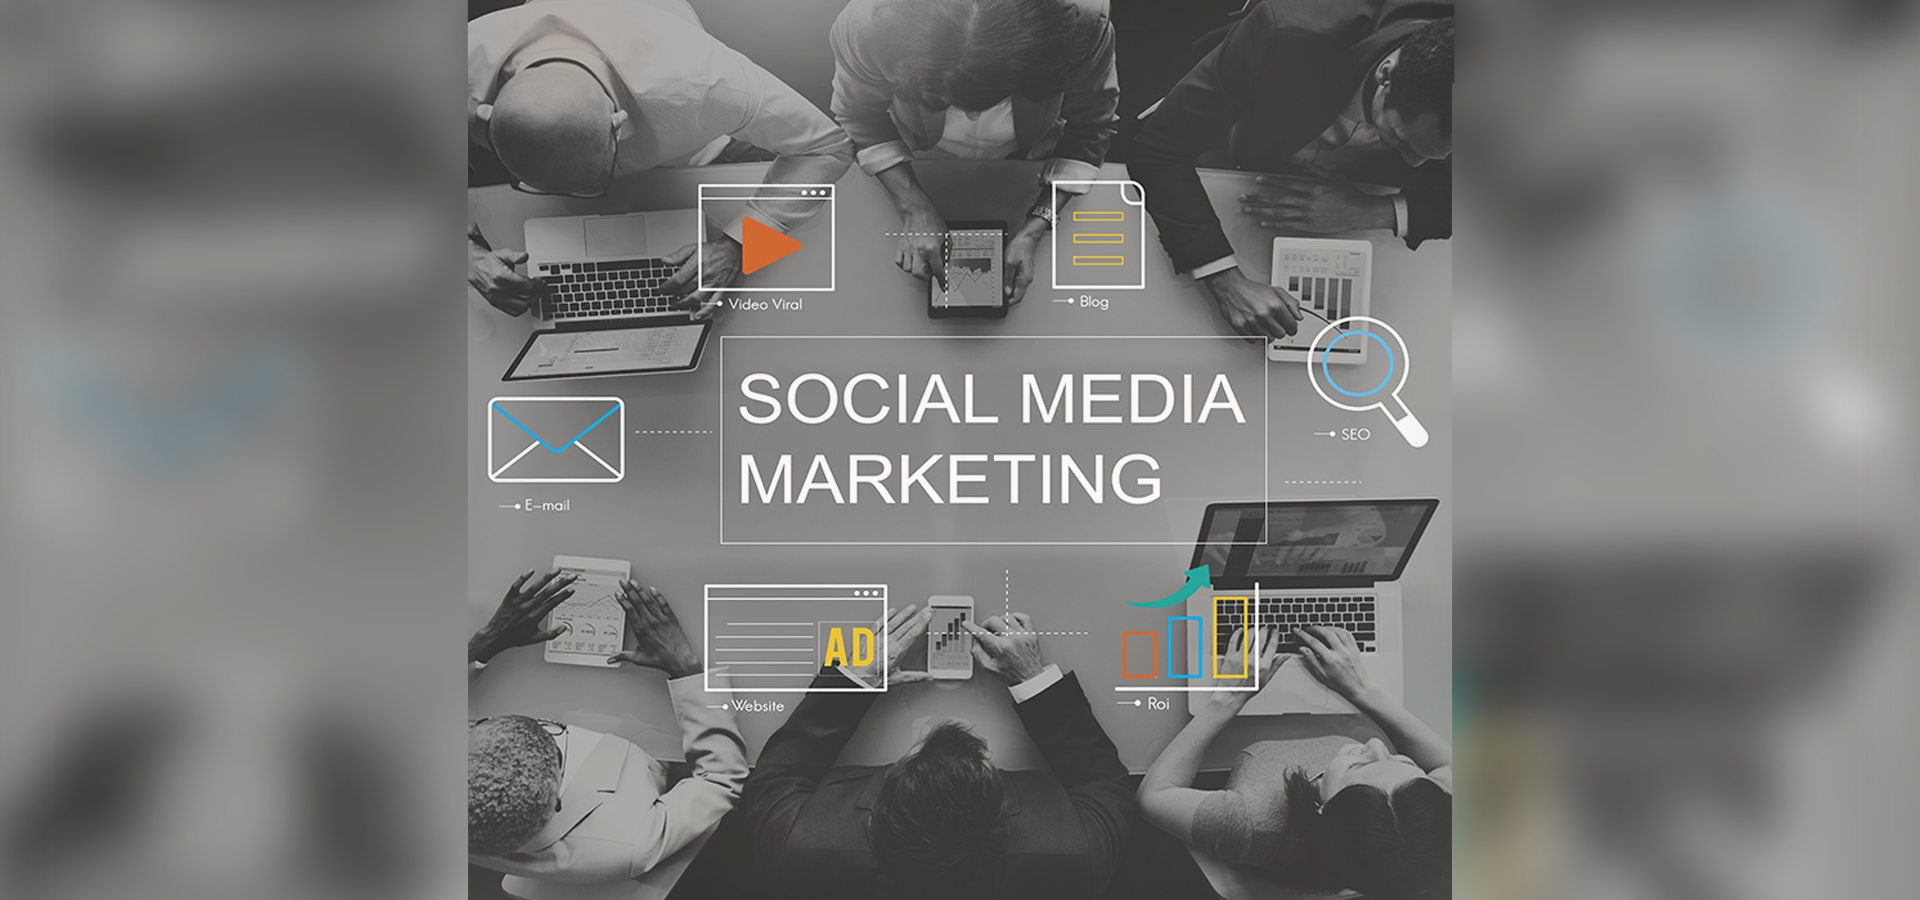 social media marketing agency banner